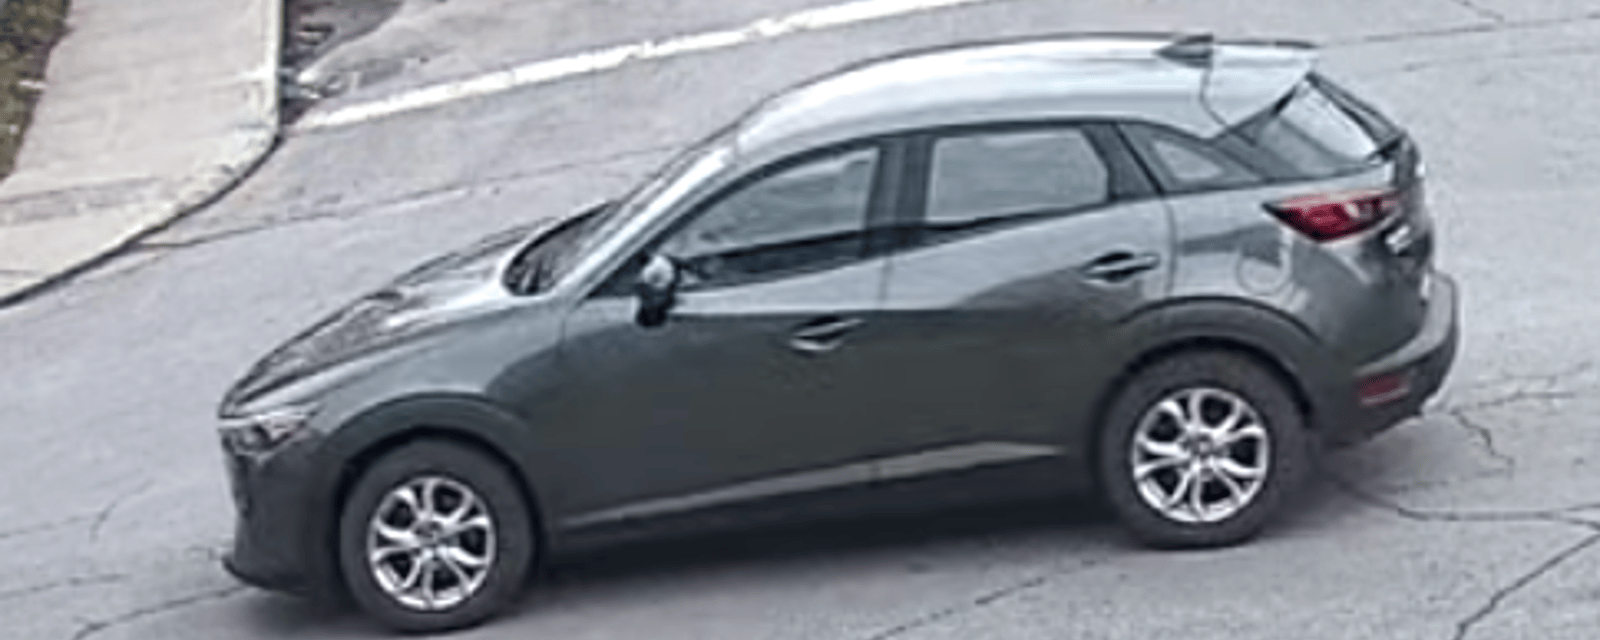 La police demande l'aide de la population pour retrouver une Mazda CX-3 grise foncée